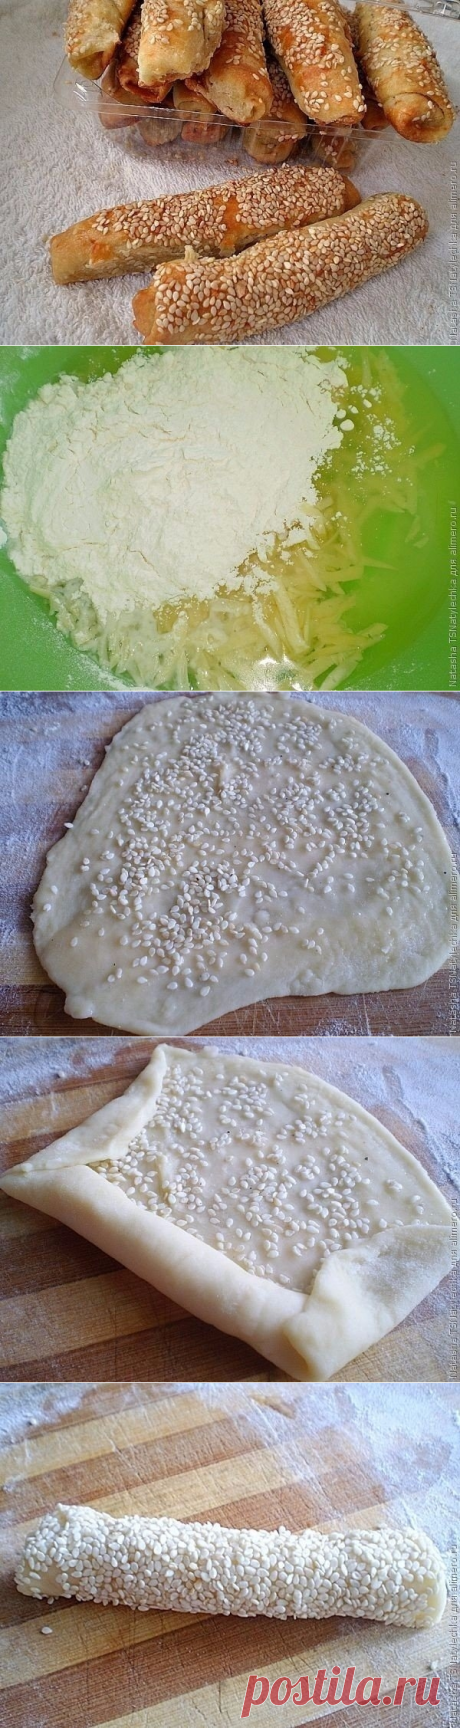 Как приготовить сырные трубочки с кунжутом - рецепт, ингредиенты и фотографии